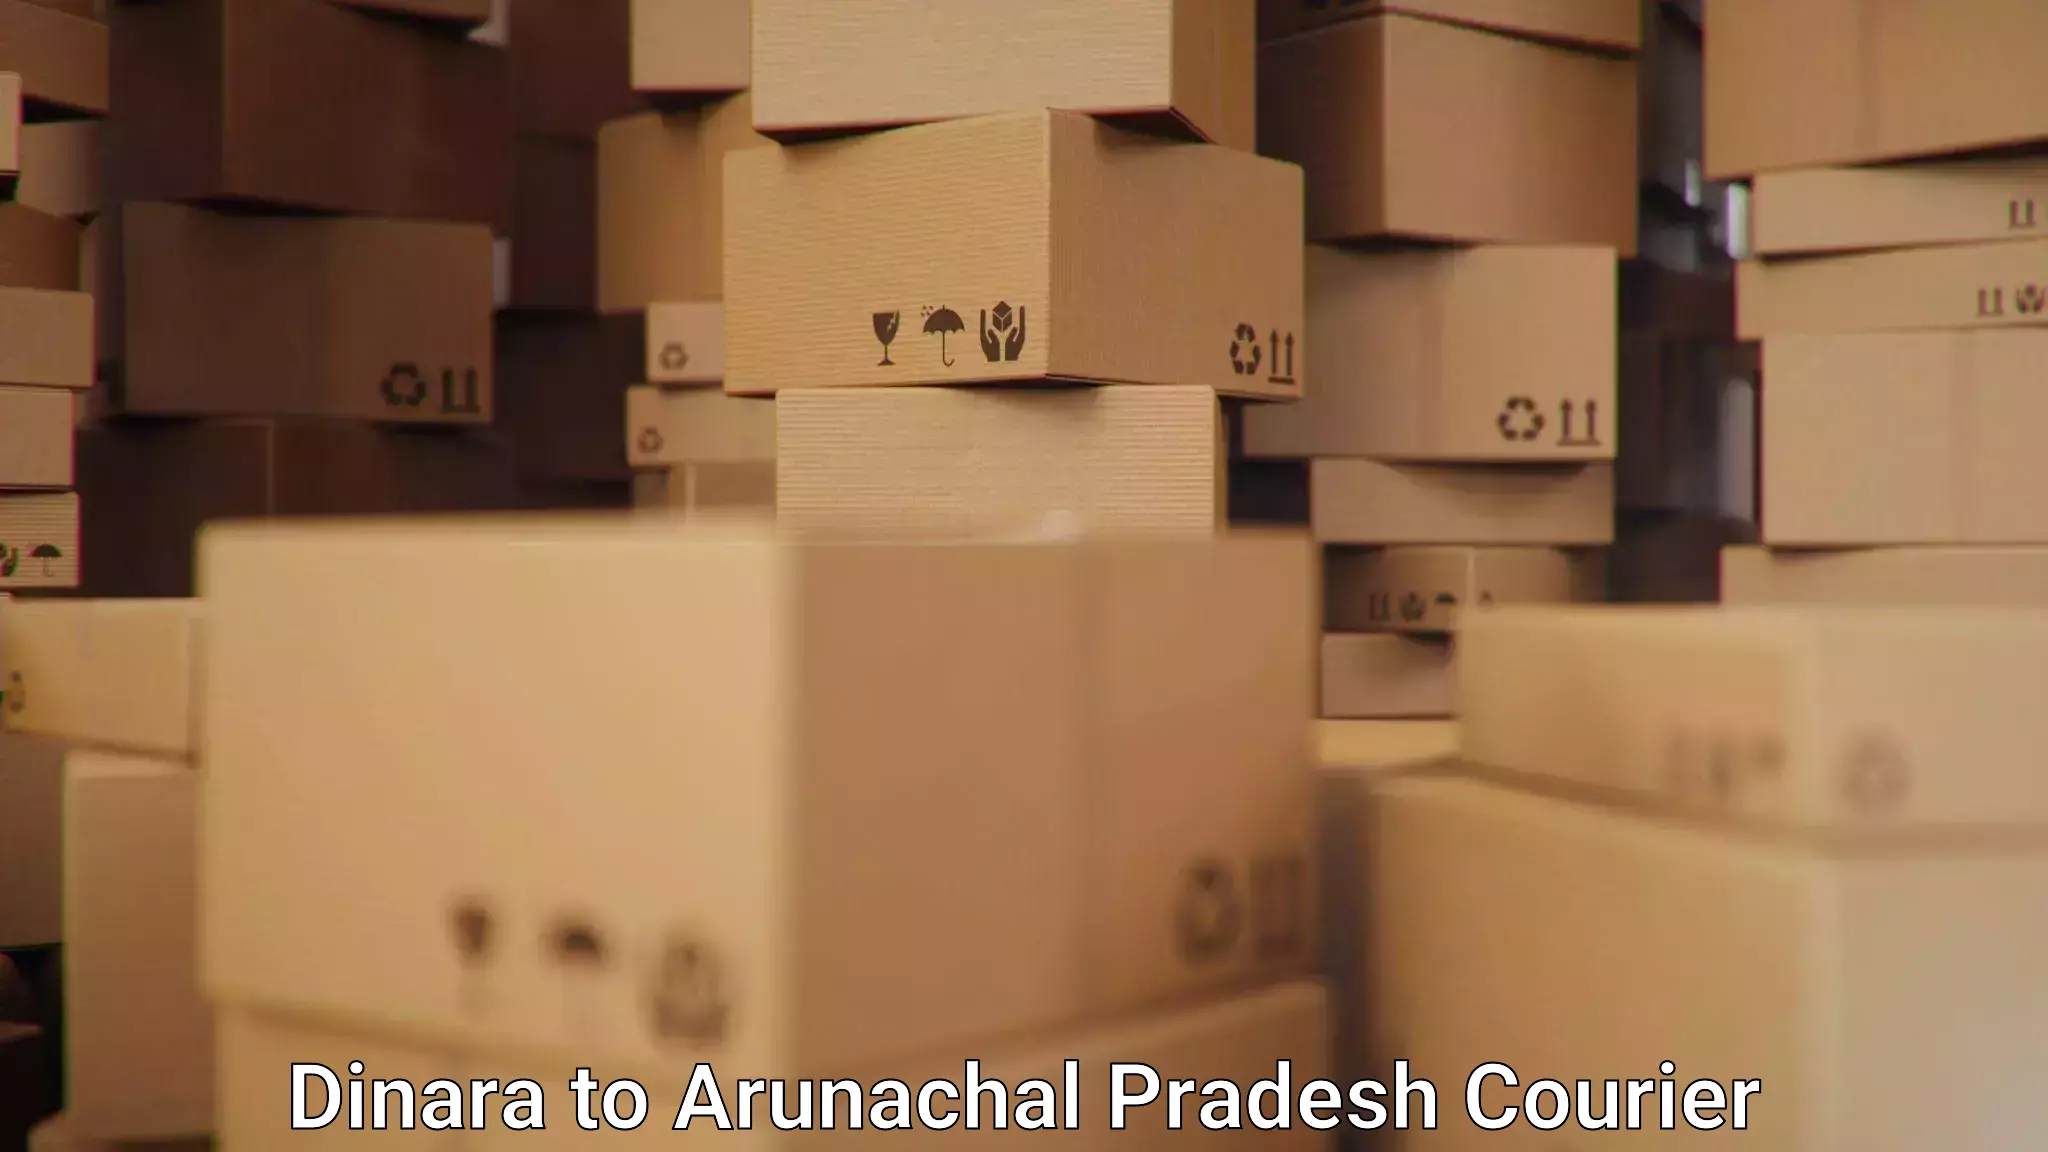 User-friendly courier app Dinara to Arunachal Pradesh